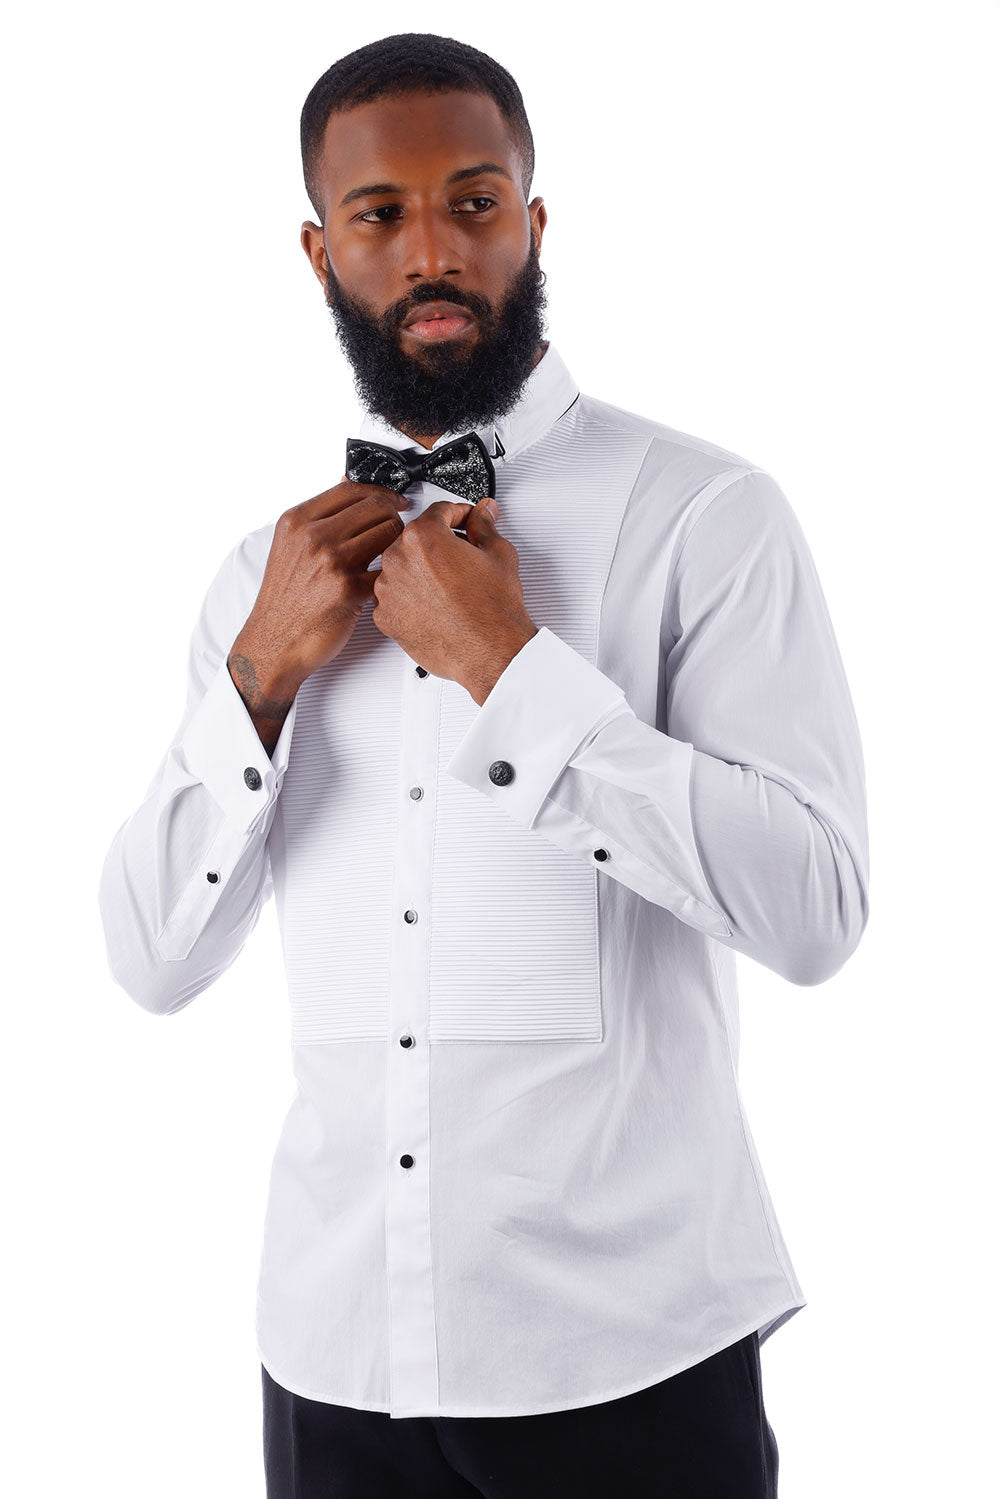 BARABAS Men's Solid Color Tuxedo Button Down Long Sleeve Shirt 4txs01 White